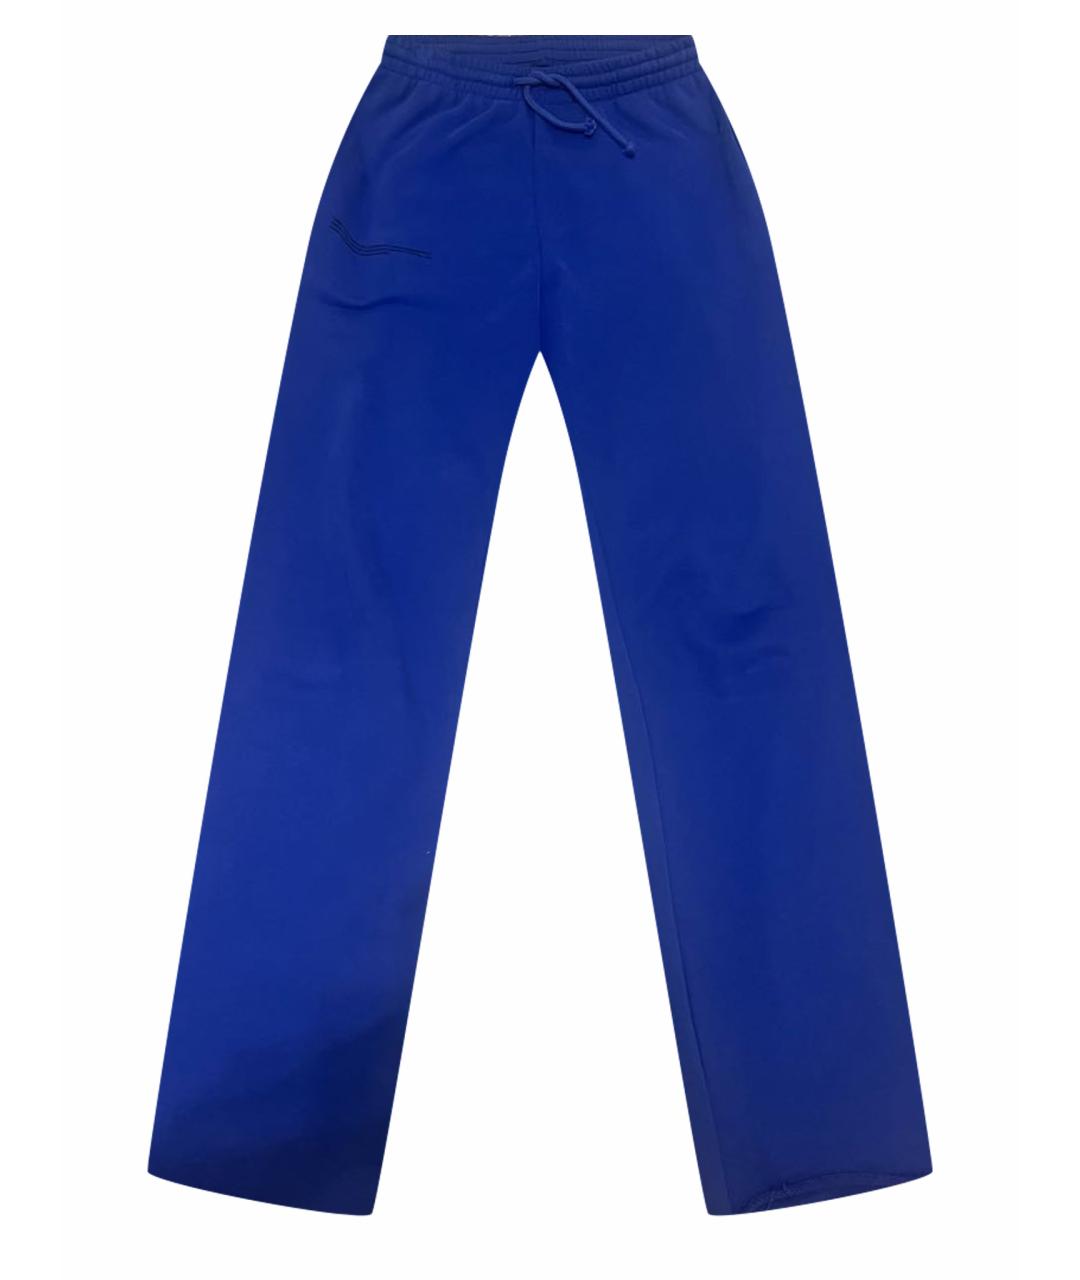 THE PANGAIA Синие хлопковые спортивные брюки и шорты, фото 1